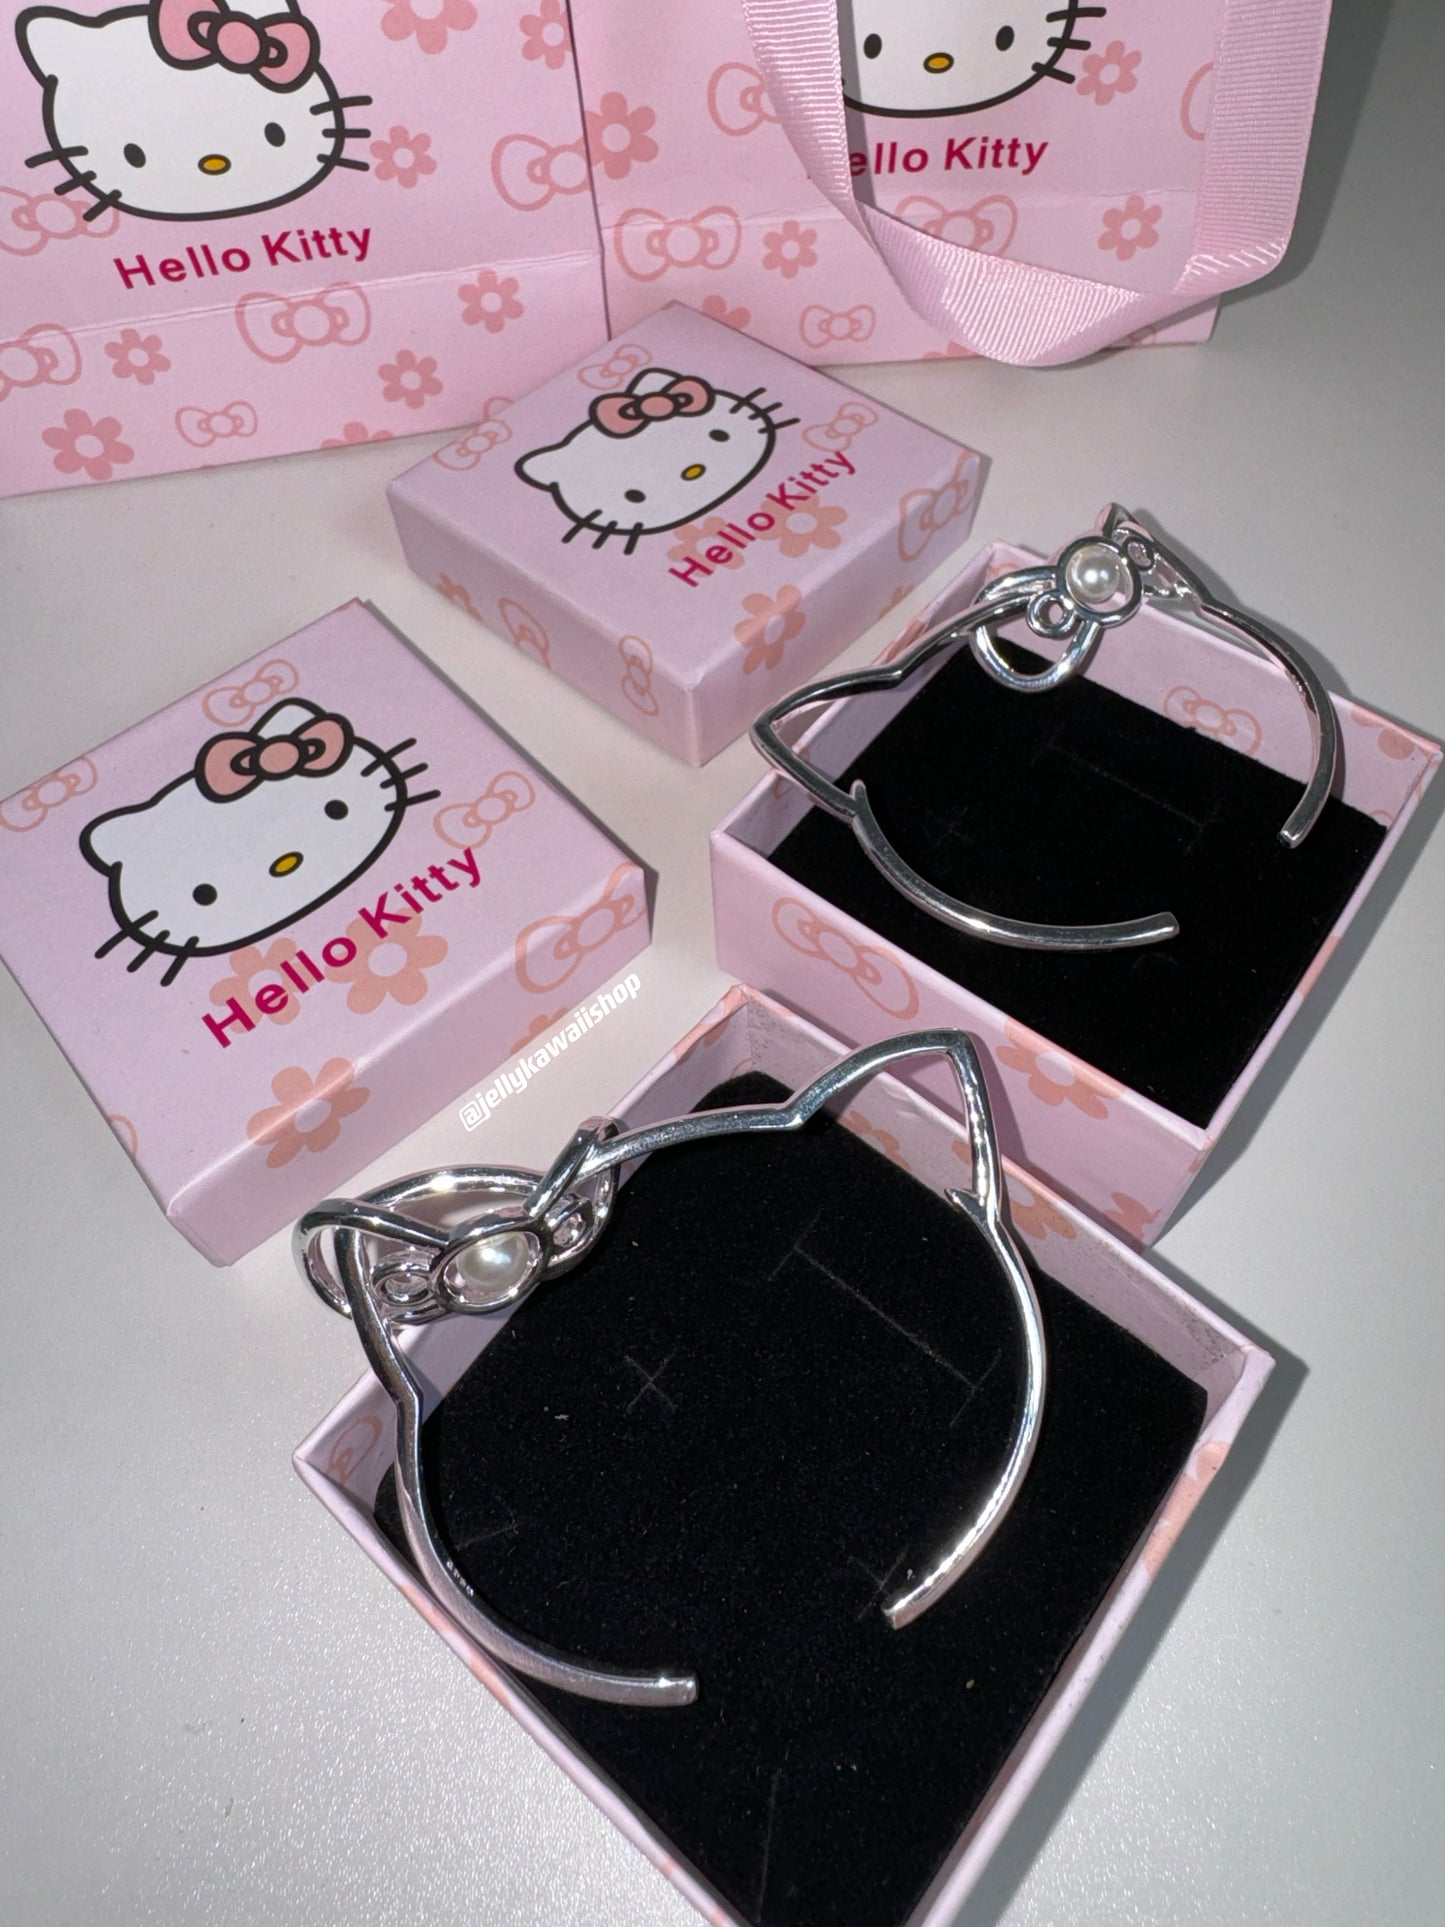 Hellokitty Stainless Steel Bangle Bracelet Cute Jewelry Open Bangle Cuff Bracelets